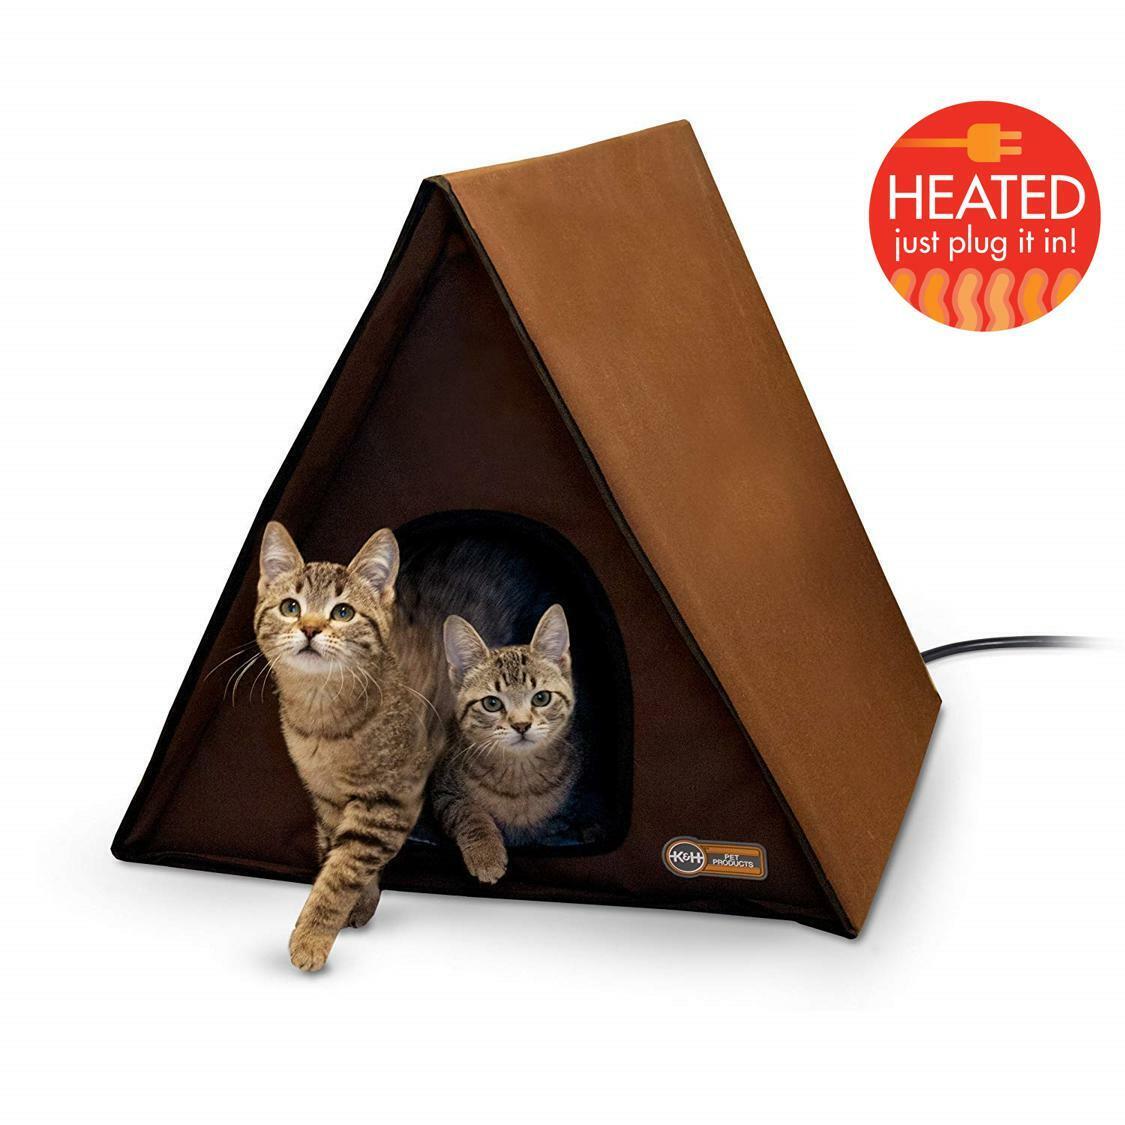 Weatherproof Frame Outdoor Heated Large Cat House Furniture Shelter Pet Brown Gloednieuw, 100% gloednieuw!